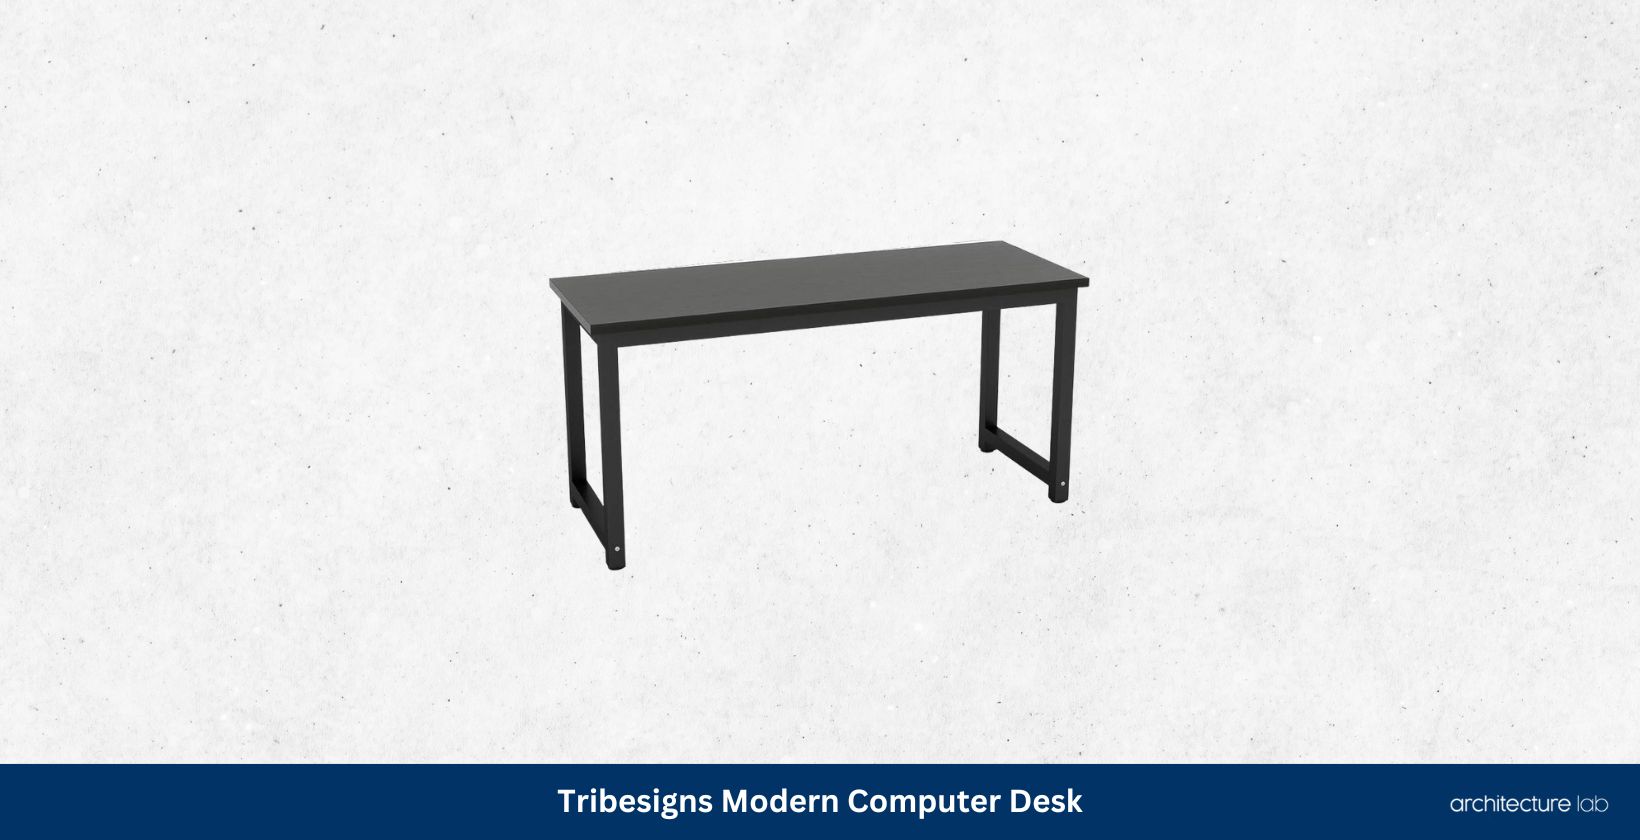 Tribesigns modern computer desk